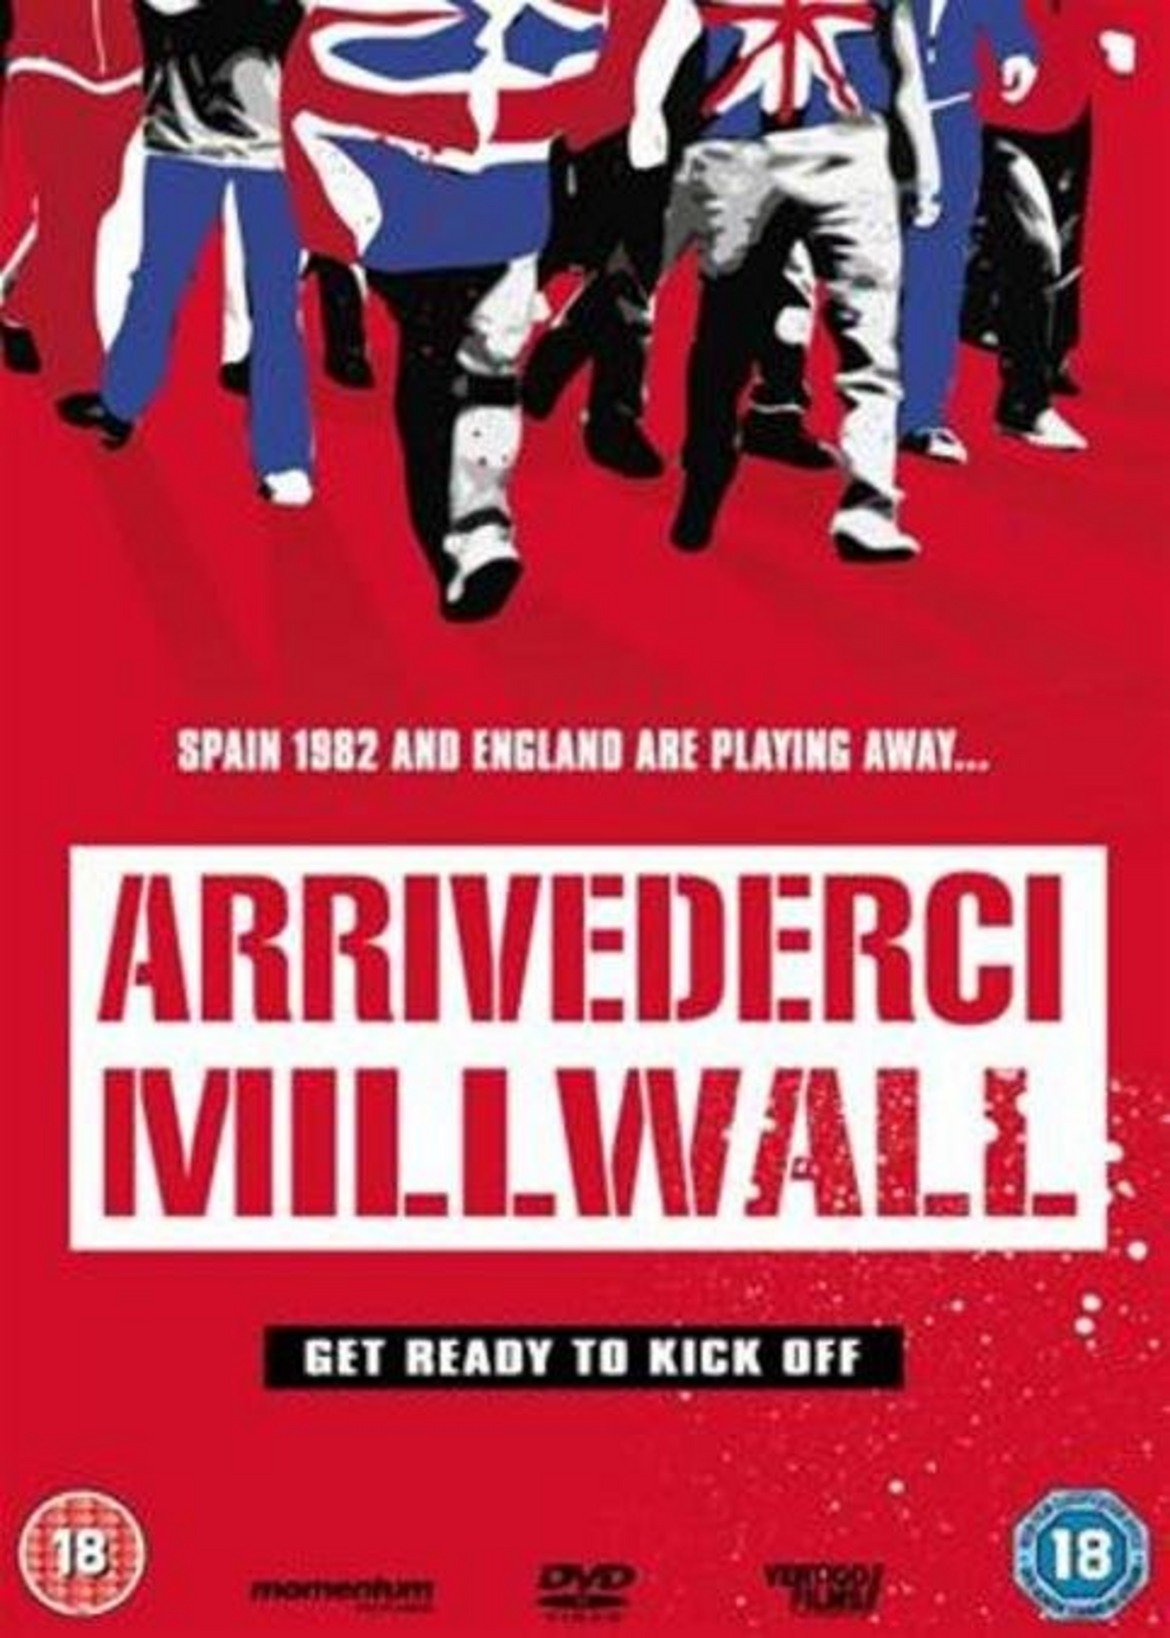 "Arrividerci Millwall" (1990)
Неособено популярна, но класическа хулиганска лента. Филмът разказва за група хулигани на Милуол, които пътуват до Испания за финалите на Световното първенство през 1982 г. скоро след началото на Фолкландската война, а един от членовете на бандата търси отмъщение по лични подбуди.